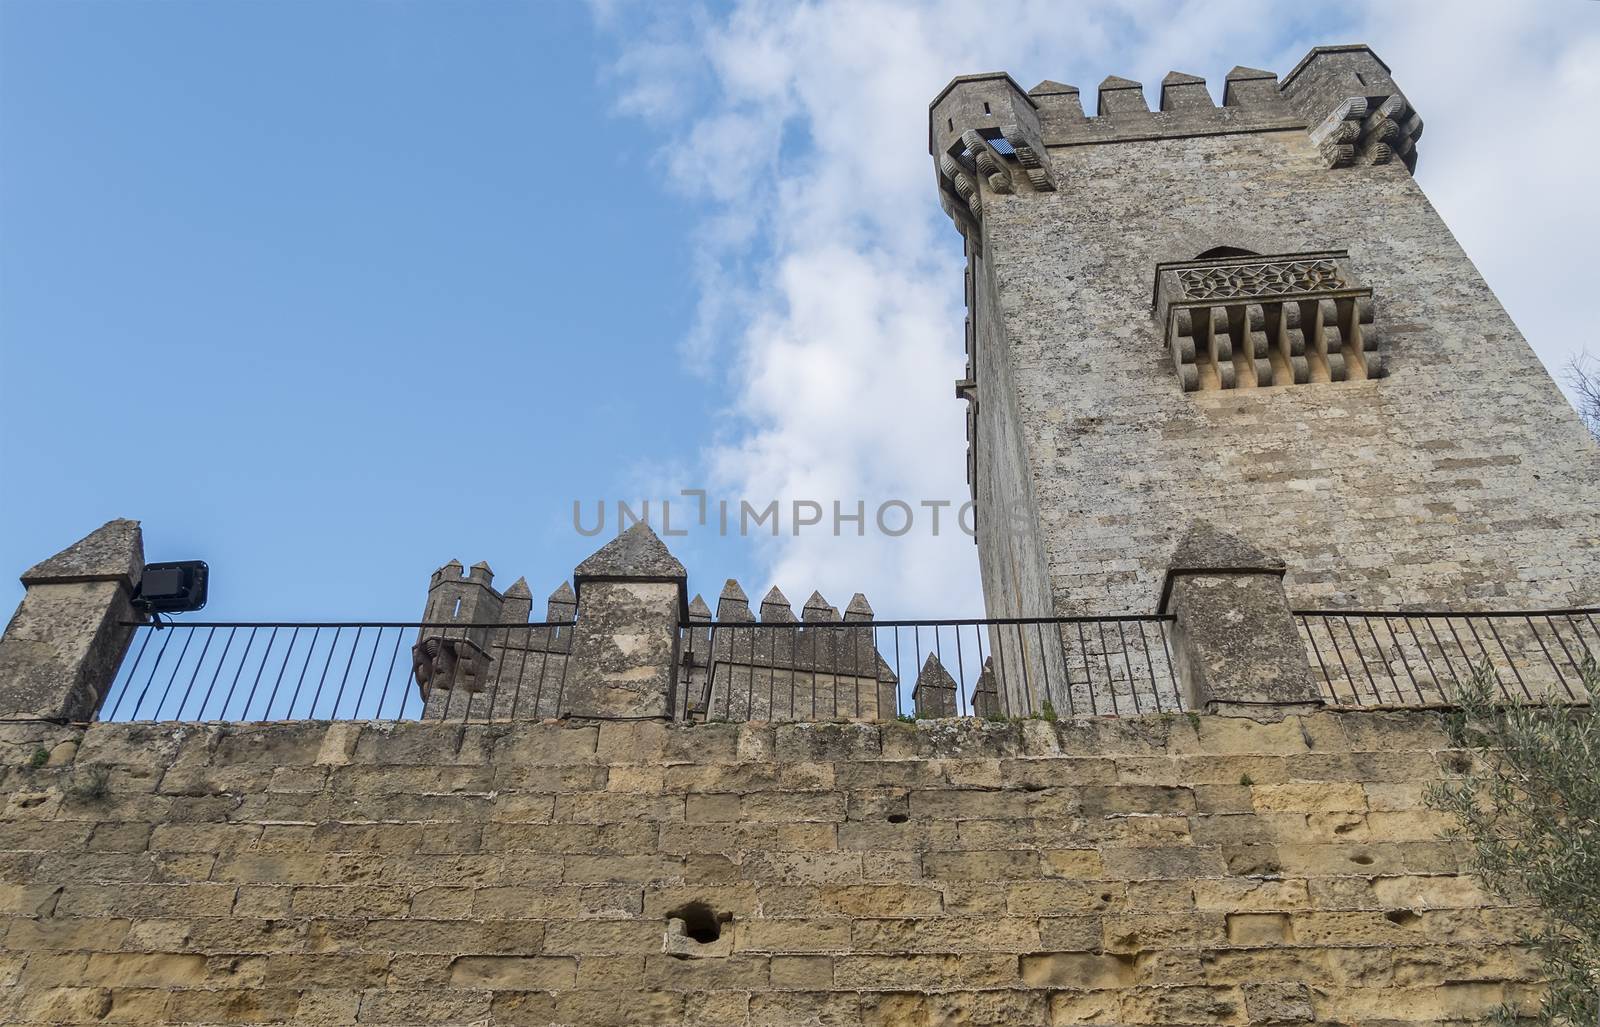 Almodovar del rio Castle, Cordoba, Spain by max8xam